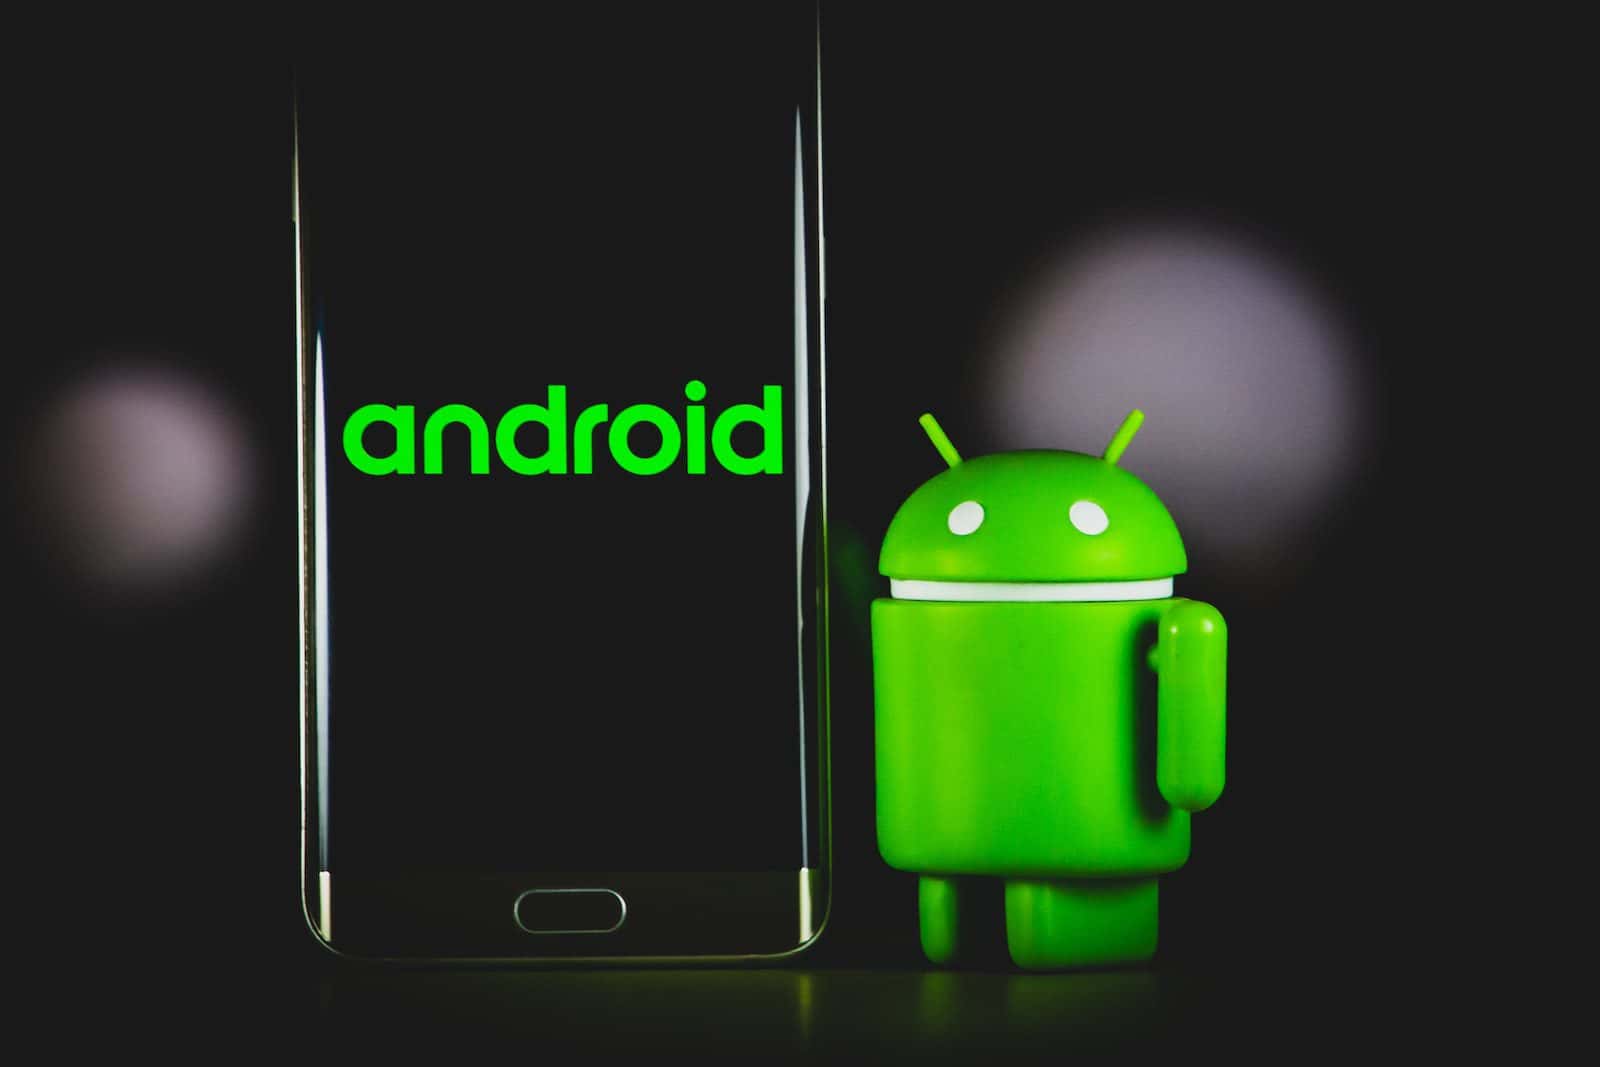 绿青蛙 iphone 手机壳旁边黑色三星 android 智能手机